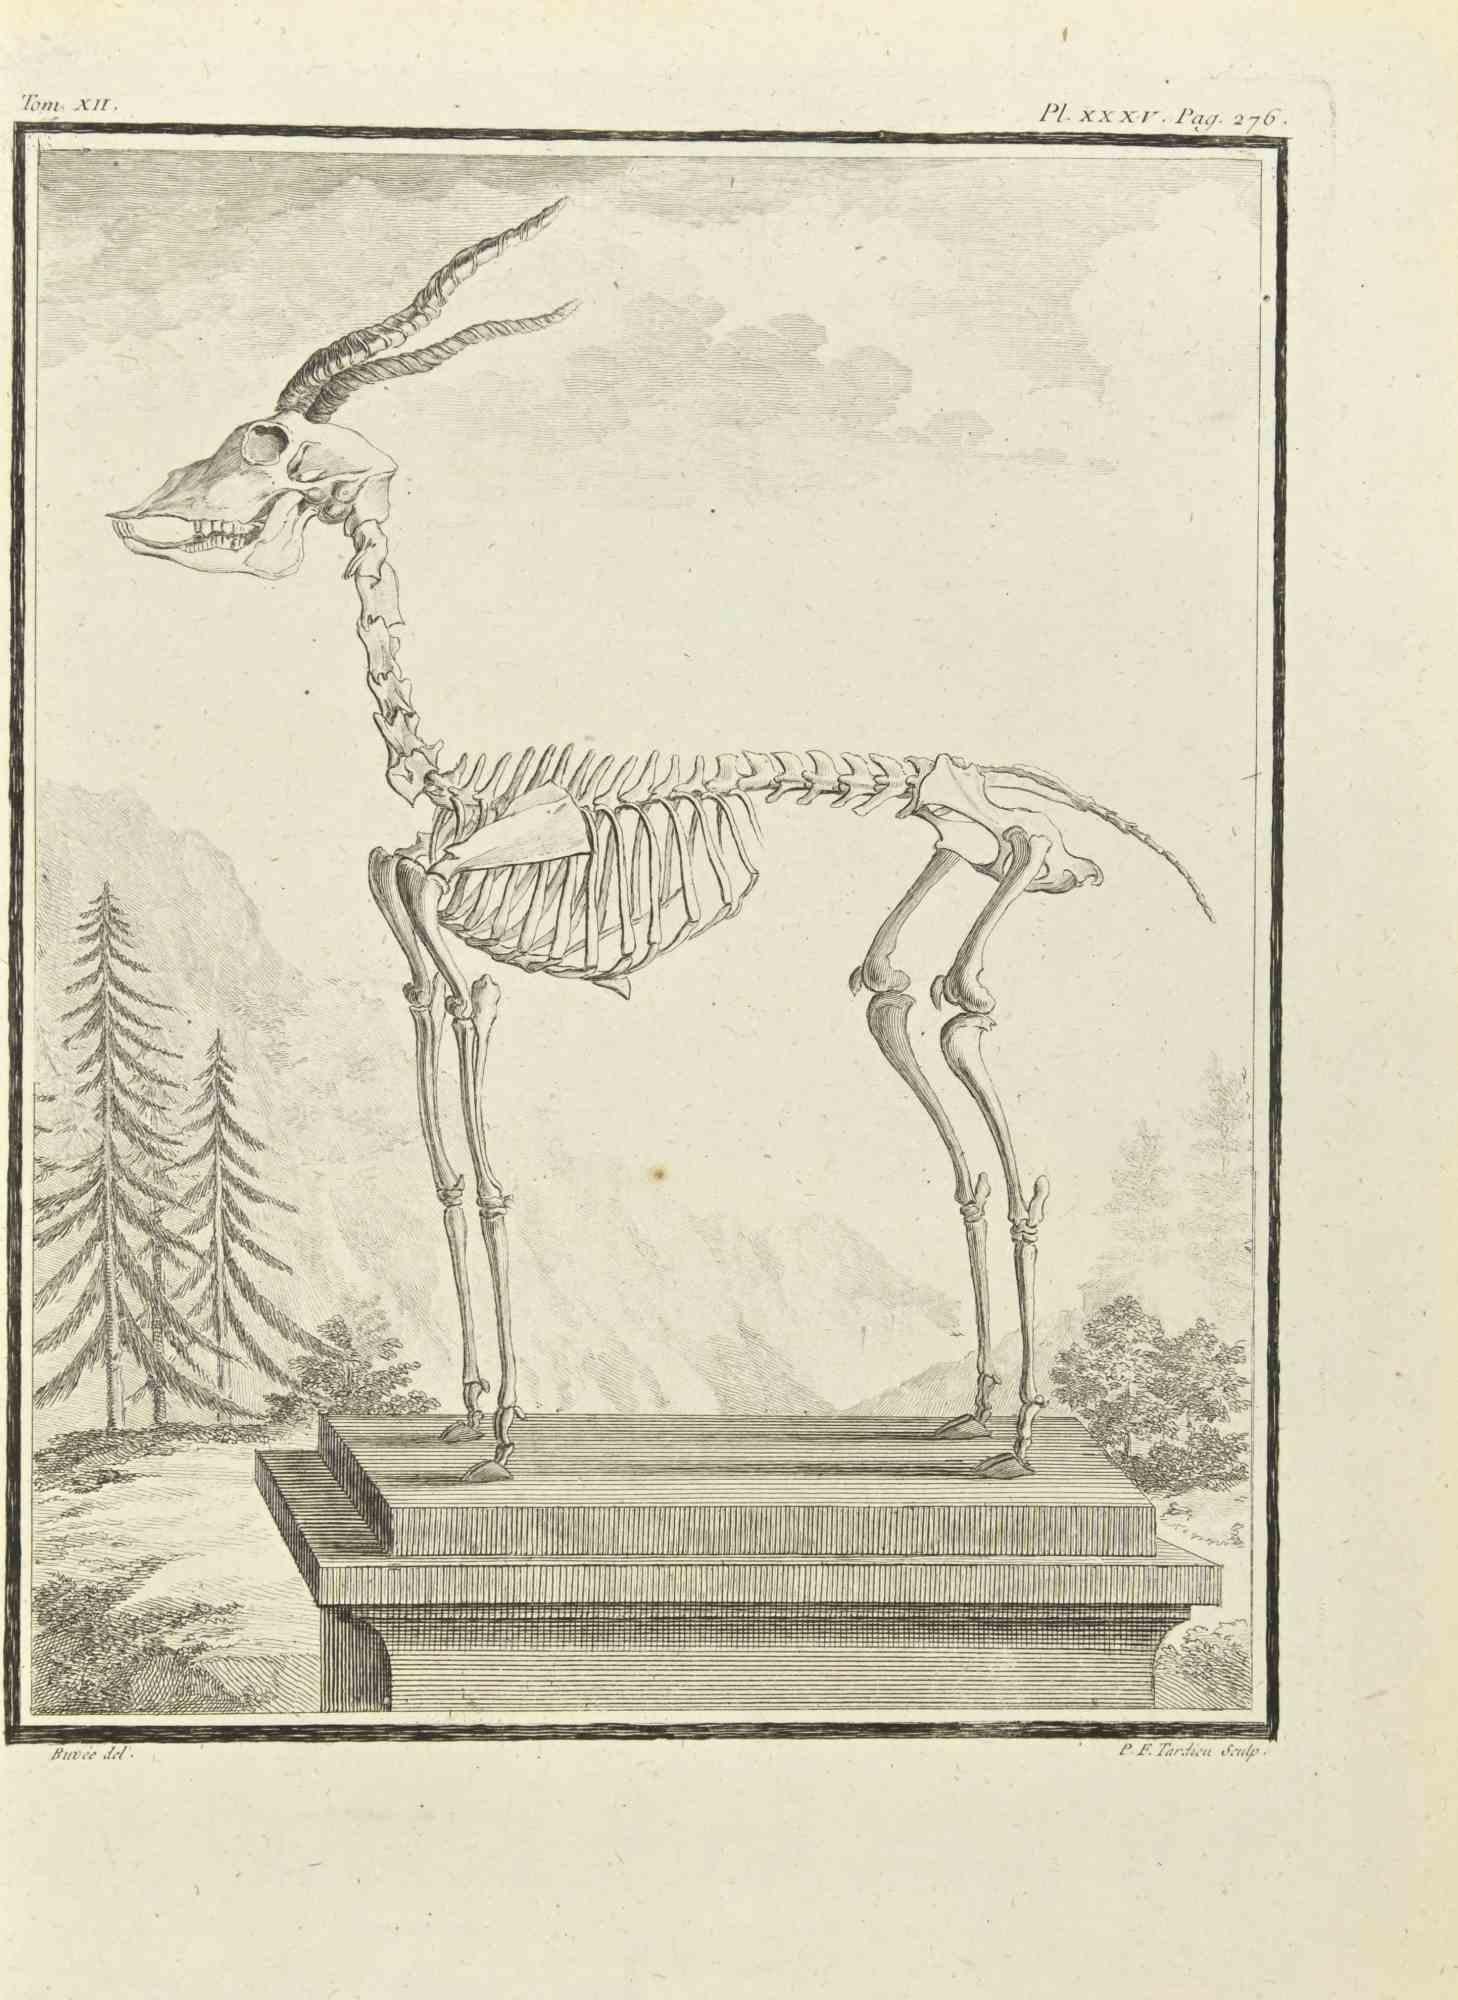 Le squelette - eau-forte de Pierre Francois Tardieu - 1771